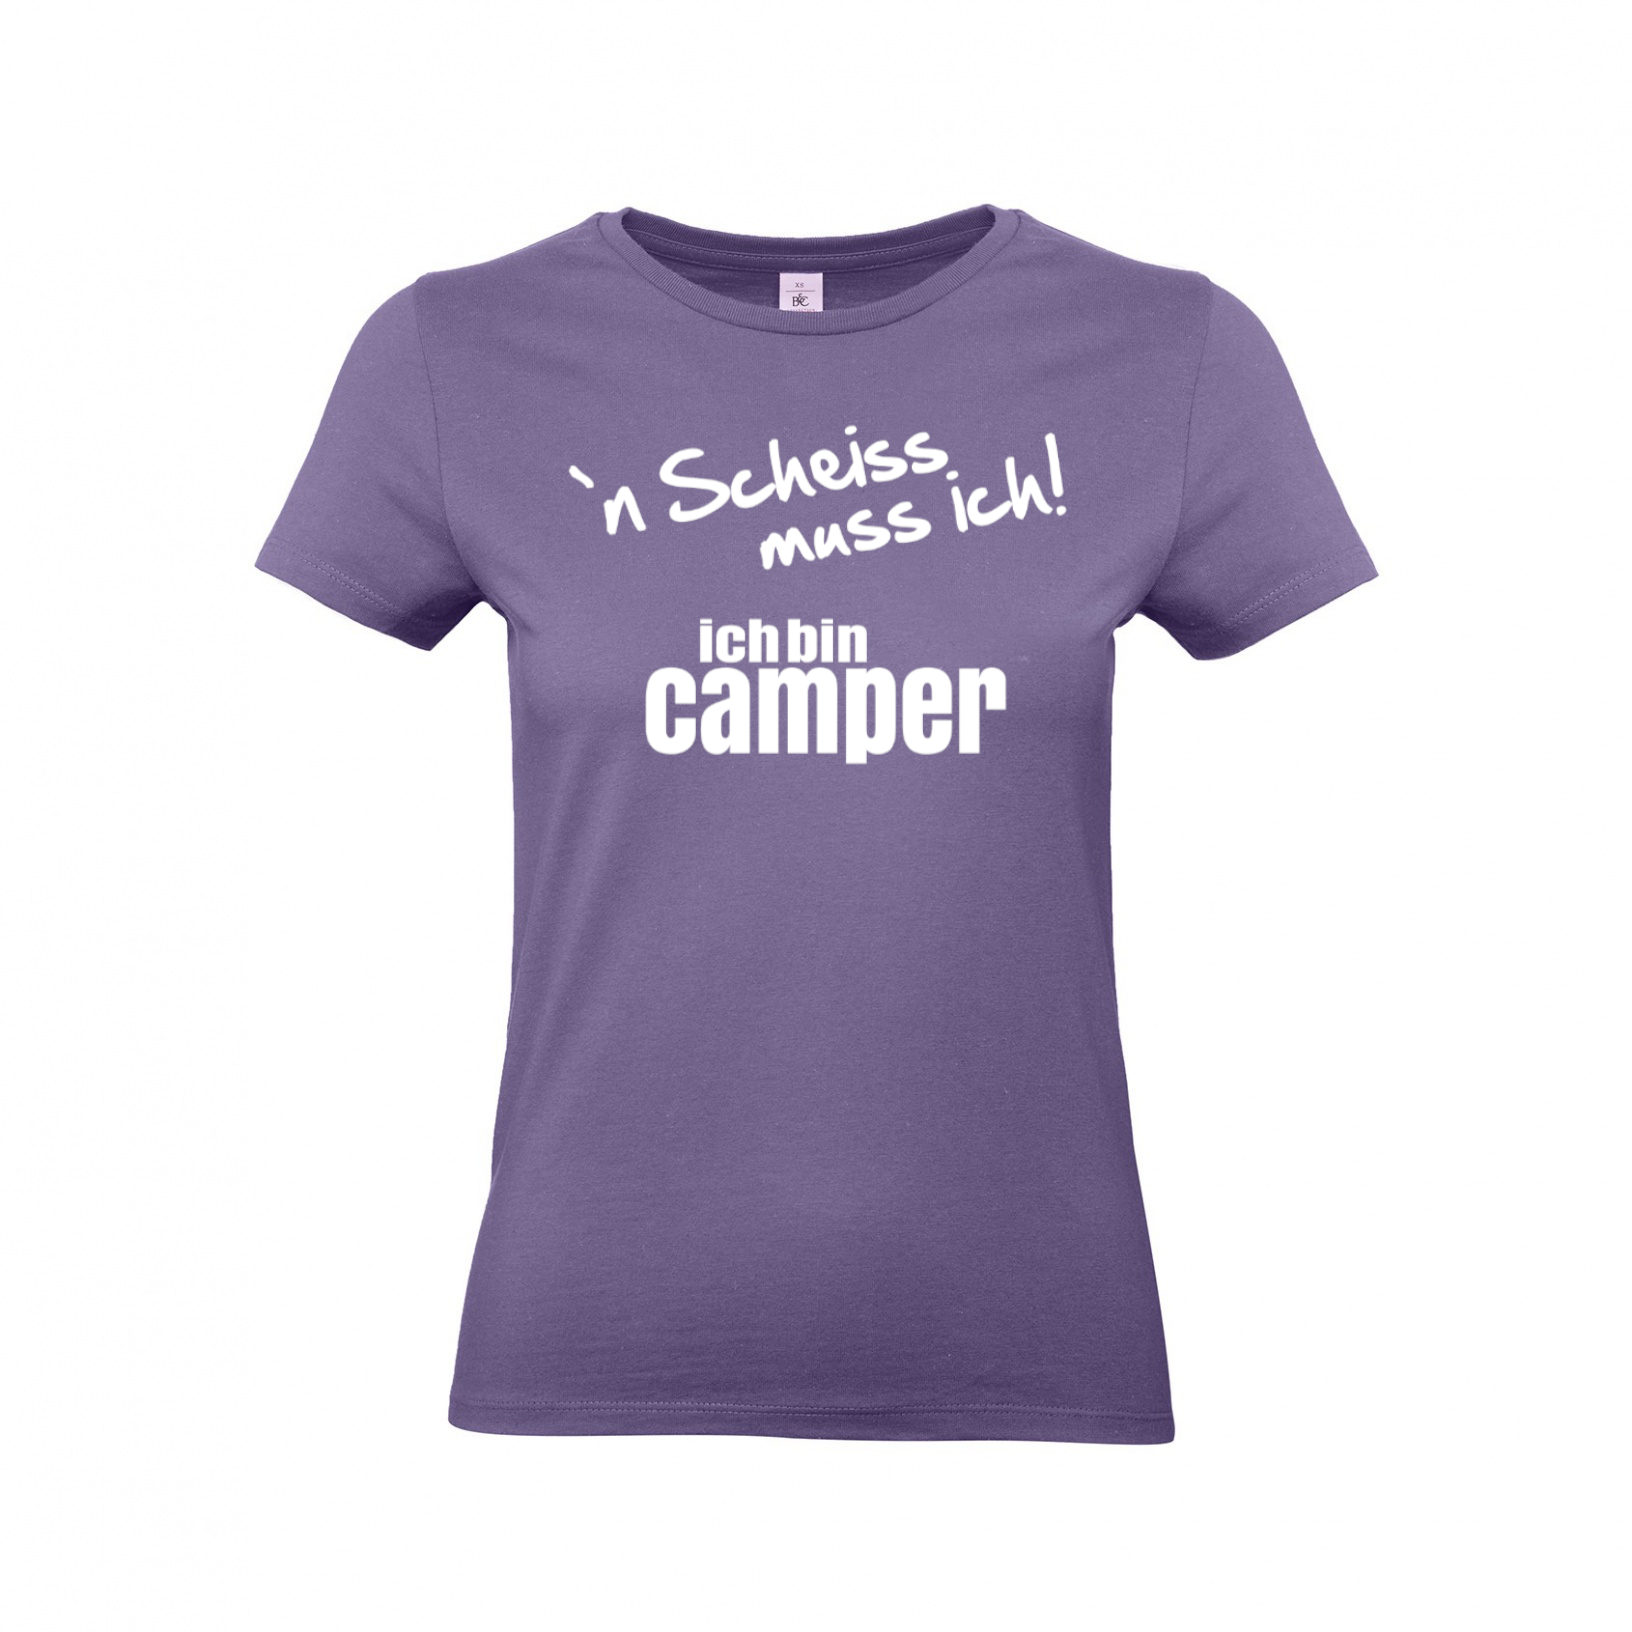 ´N Scheiss muss ich! Ich bin Camper - Camping T-Shirt für Frauen